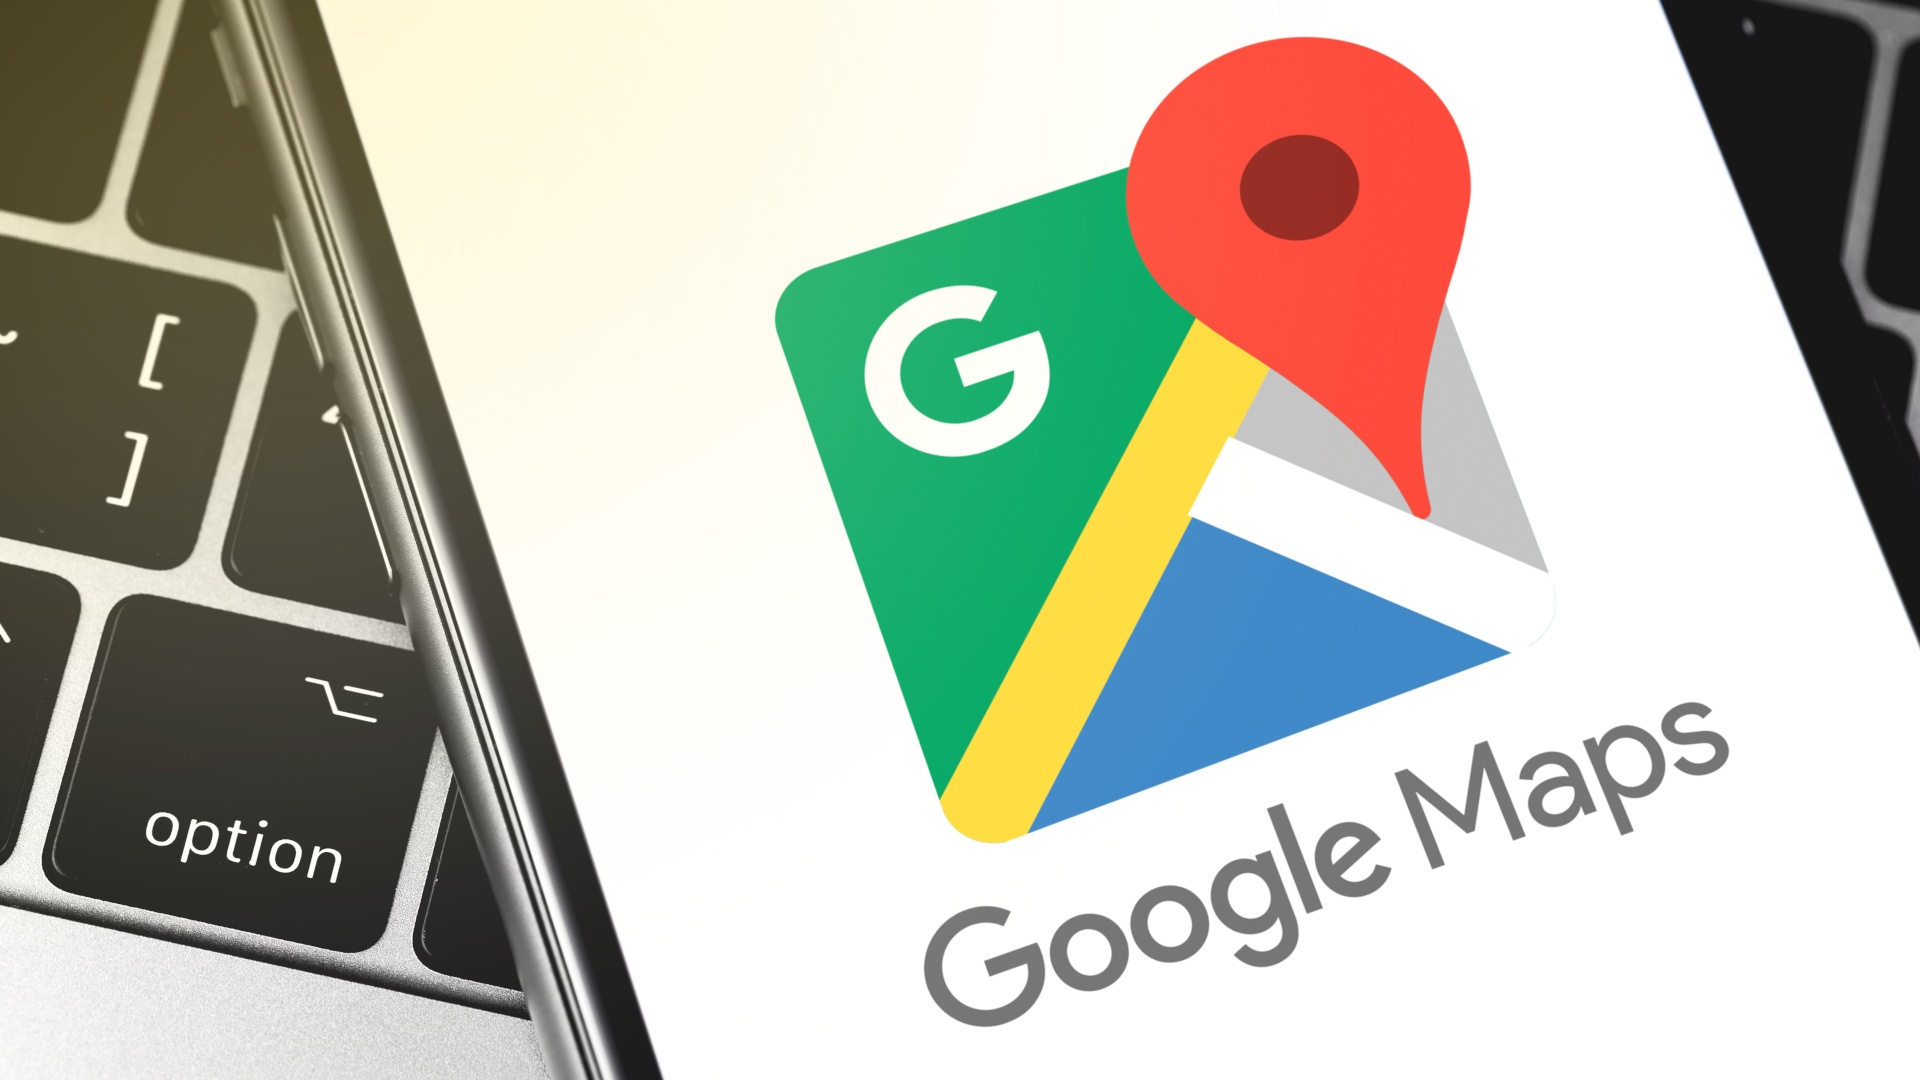 #Google Maps bekommt farbenfrohes Design spendiert und wird mit Apple Maps verglichen